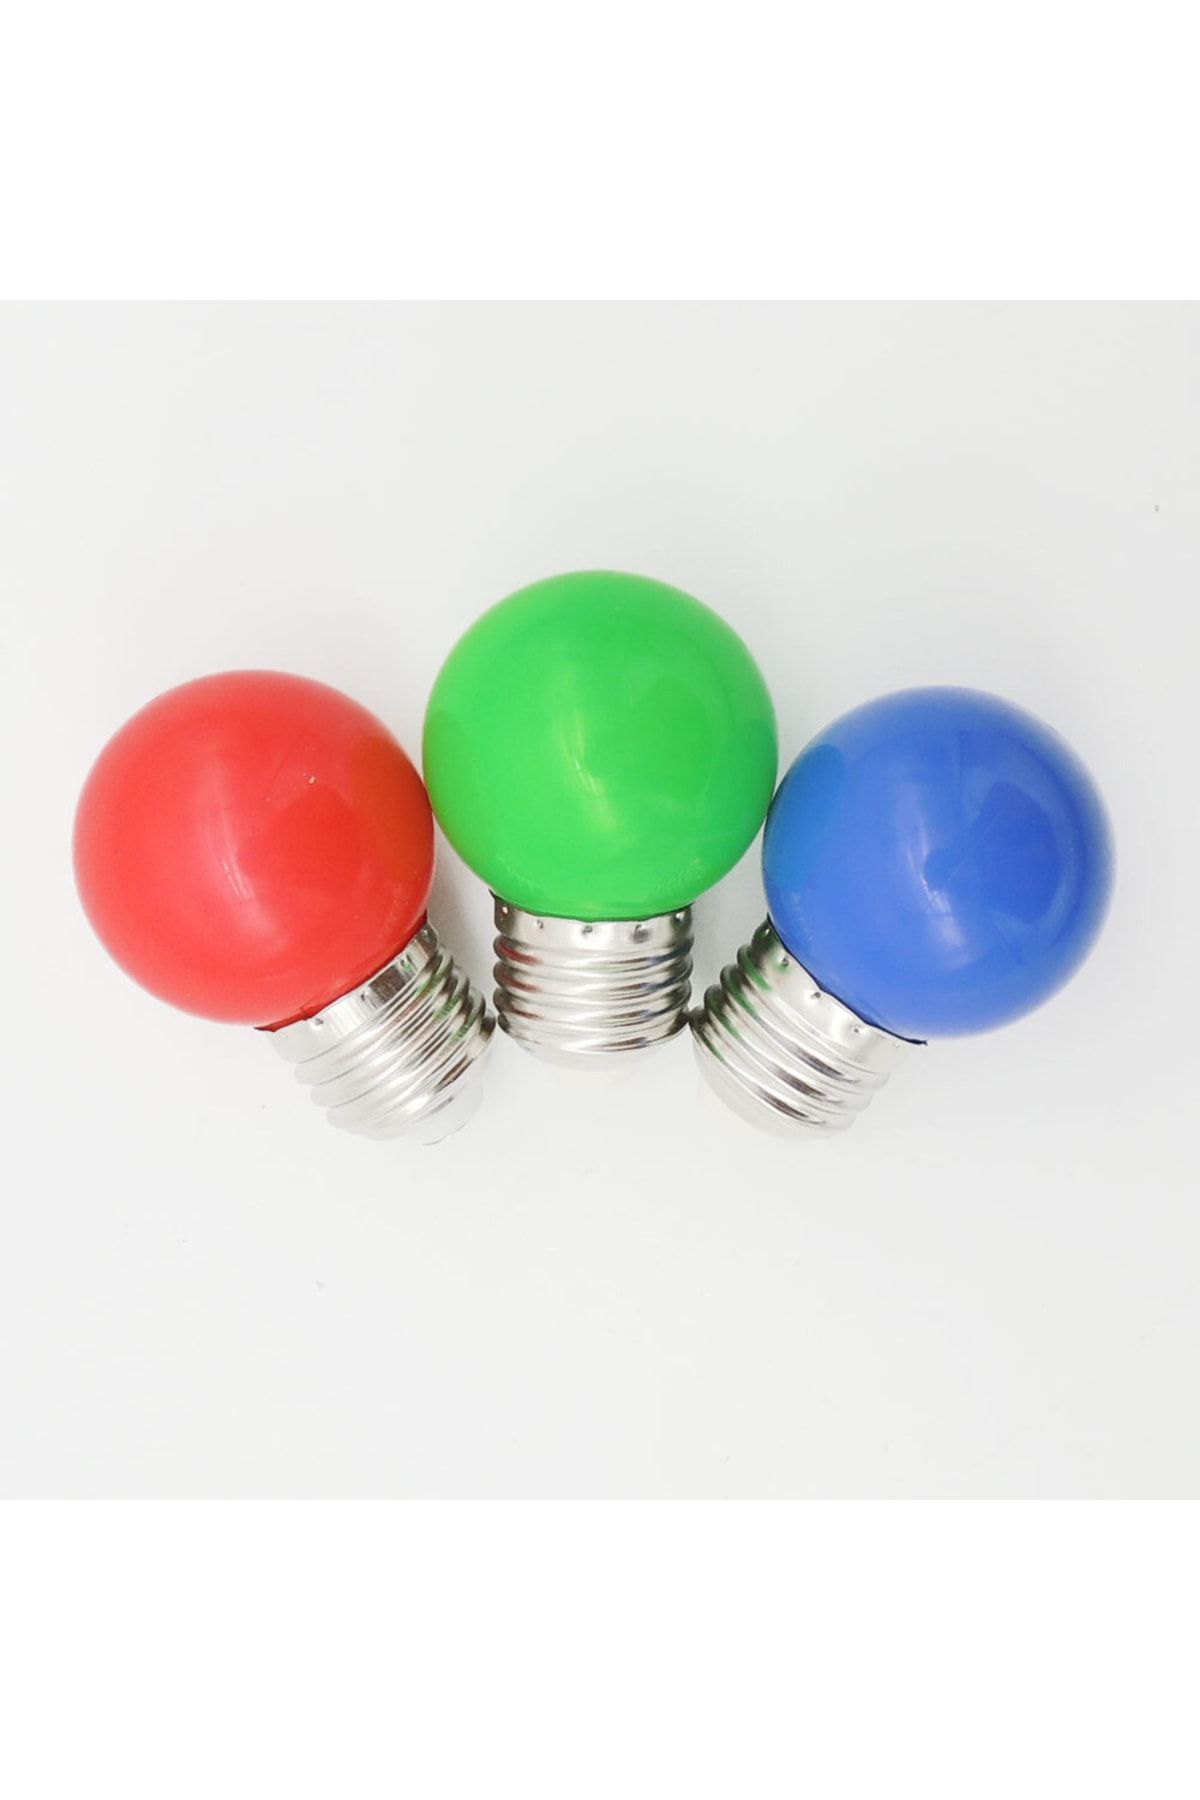 Sunlight Mini Led Gece Lambası 1 W E27 Kırmızı, Mavi, Yeşil